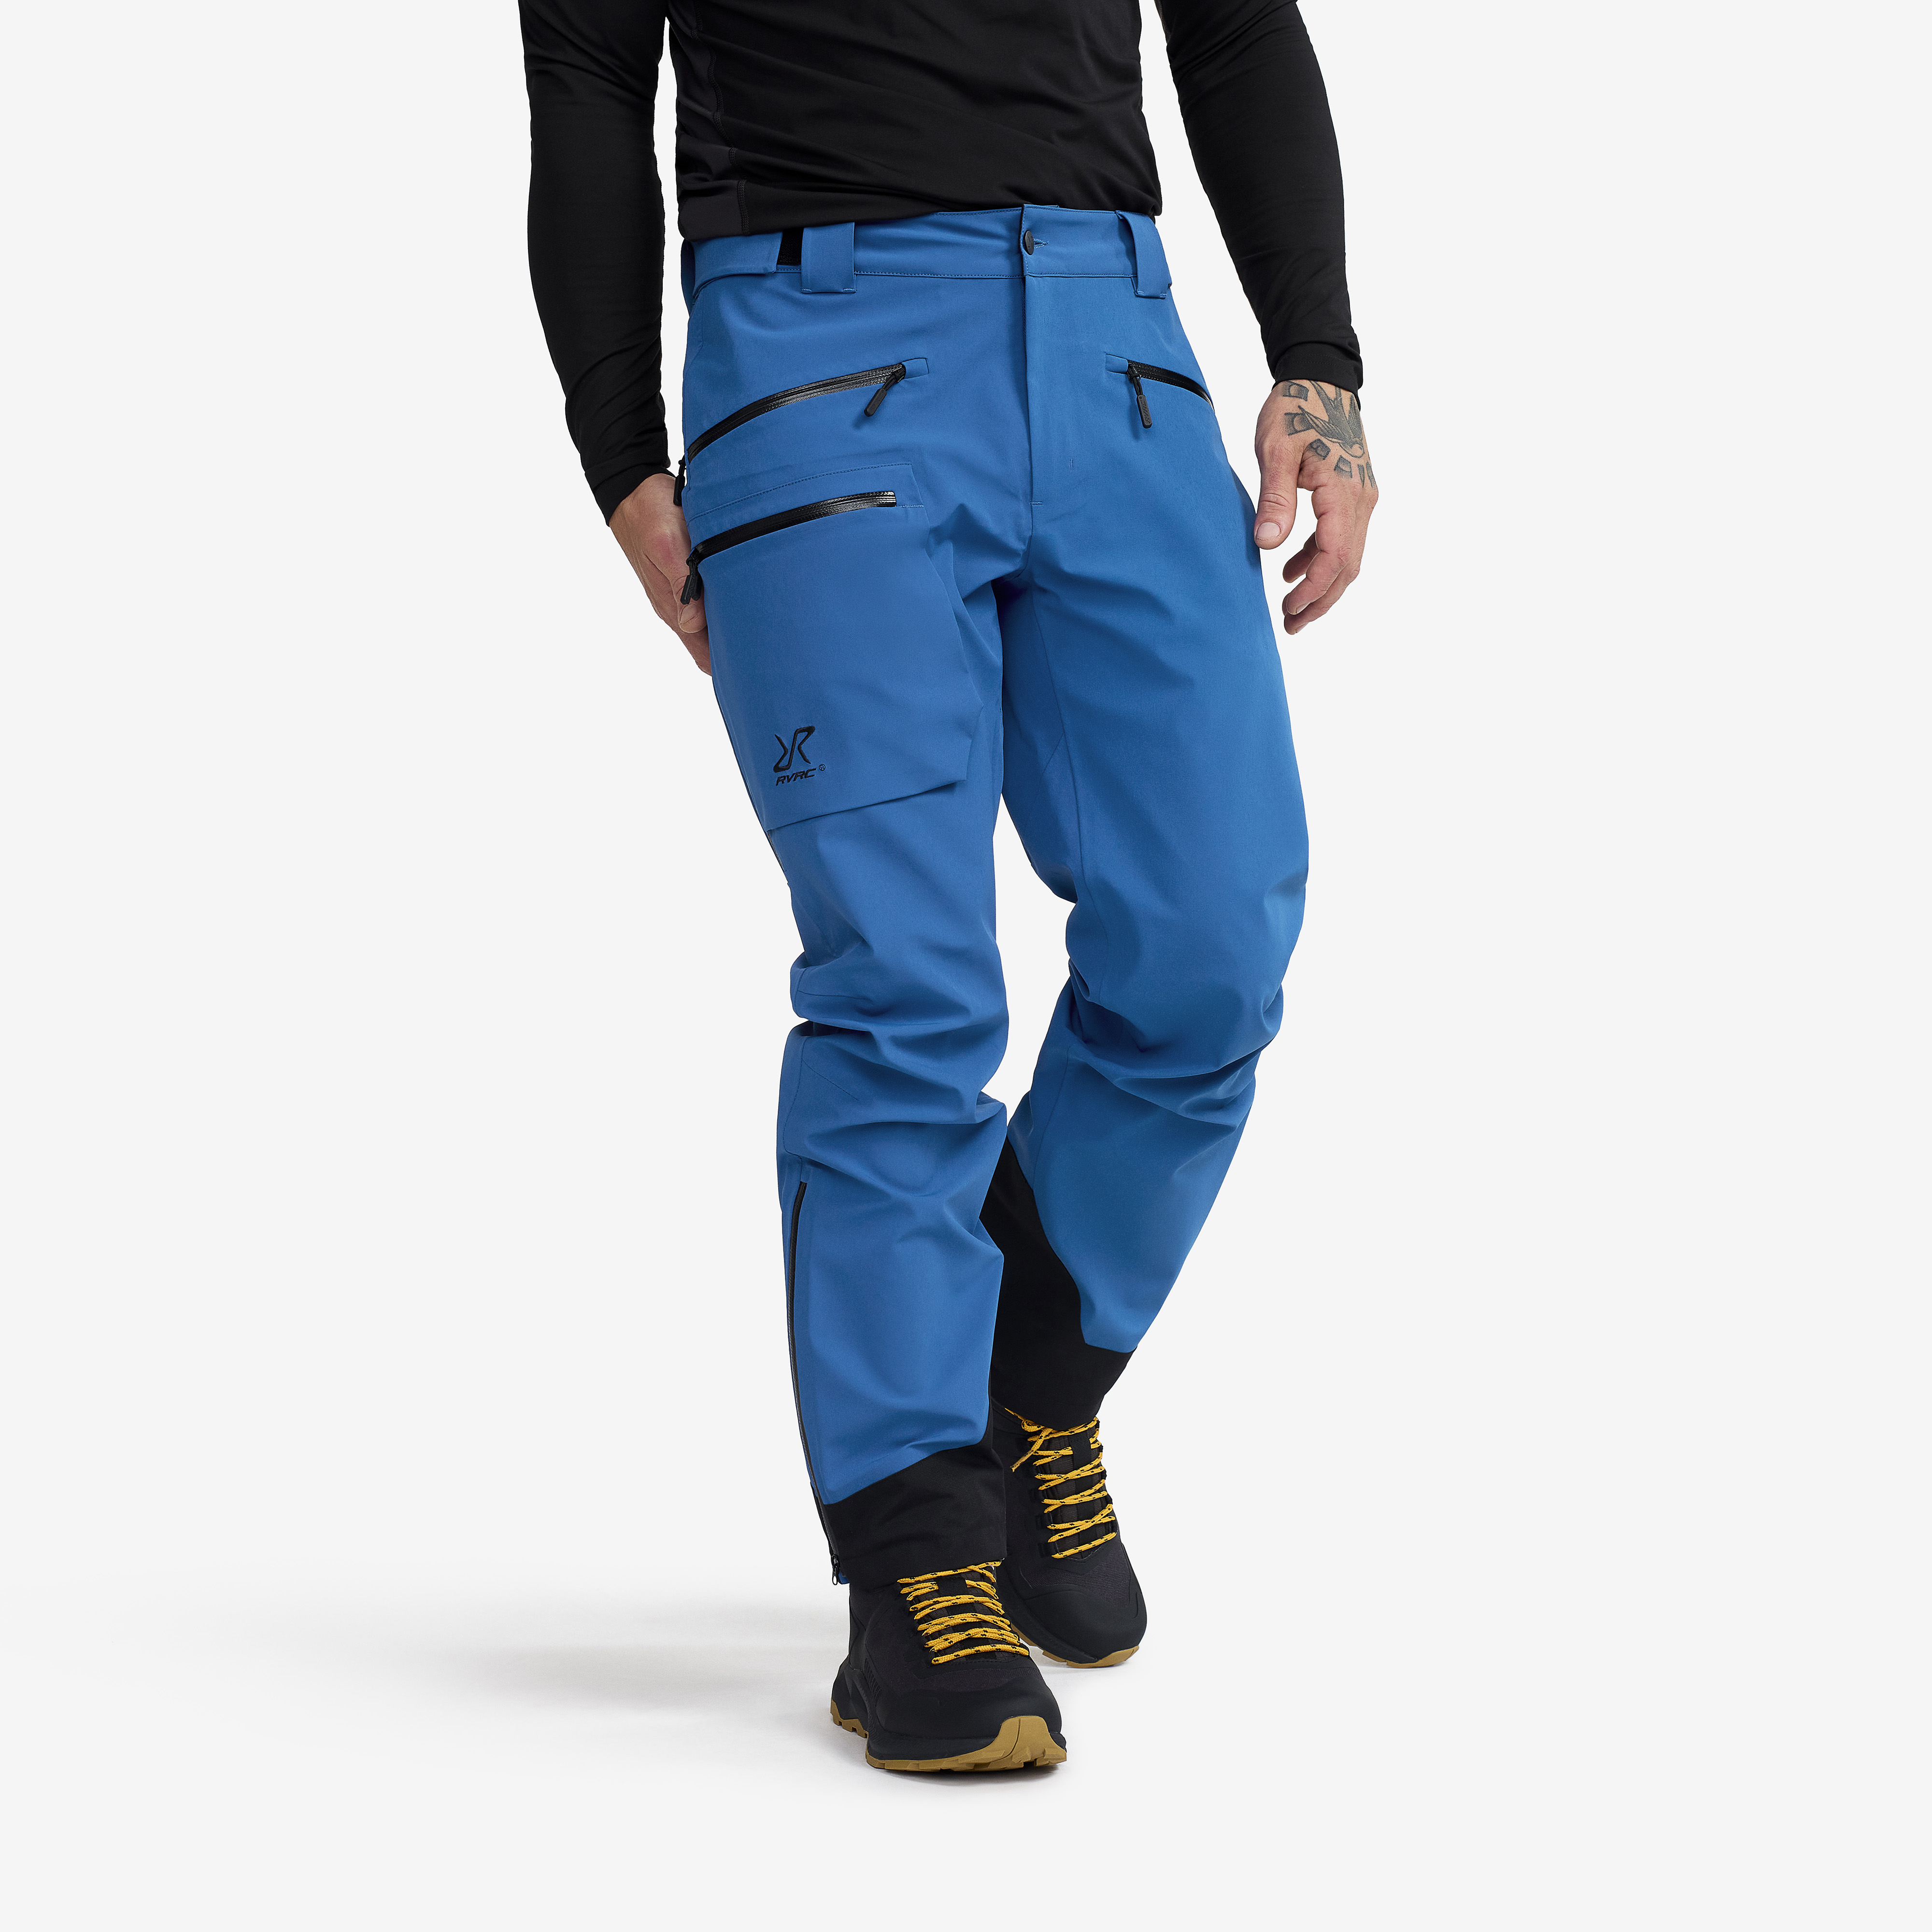 Aphex Pro Trousers Classic Blue Men